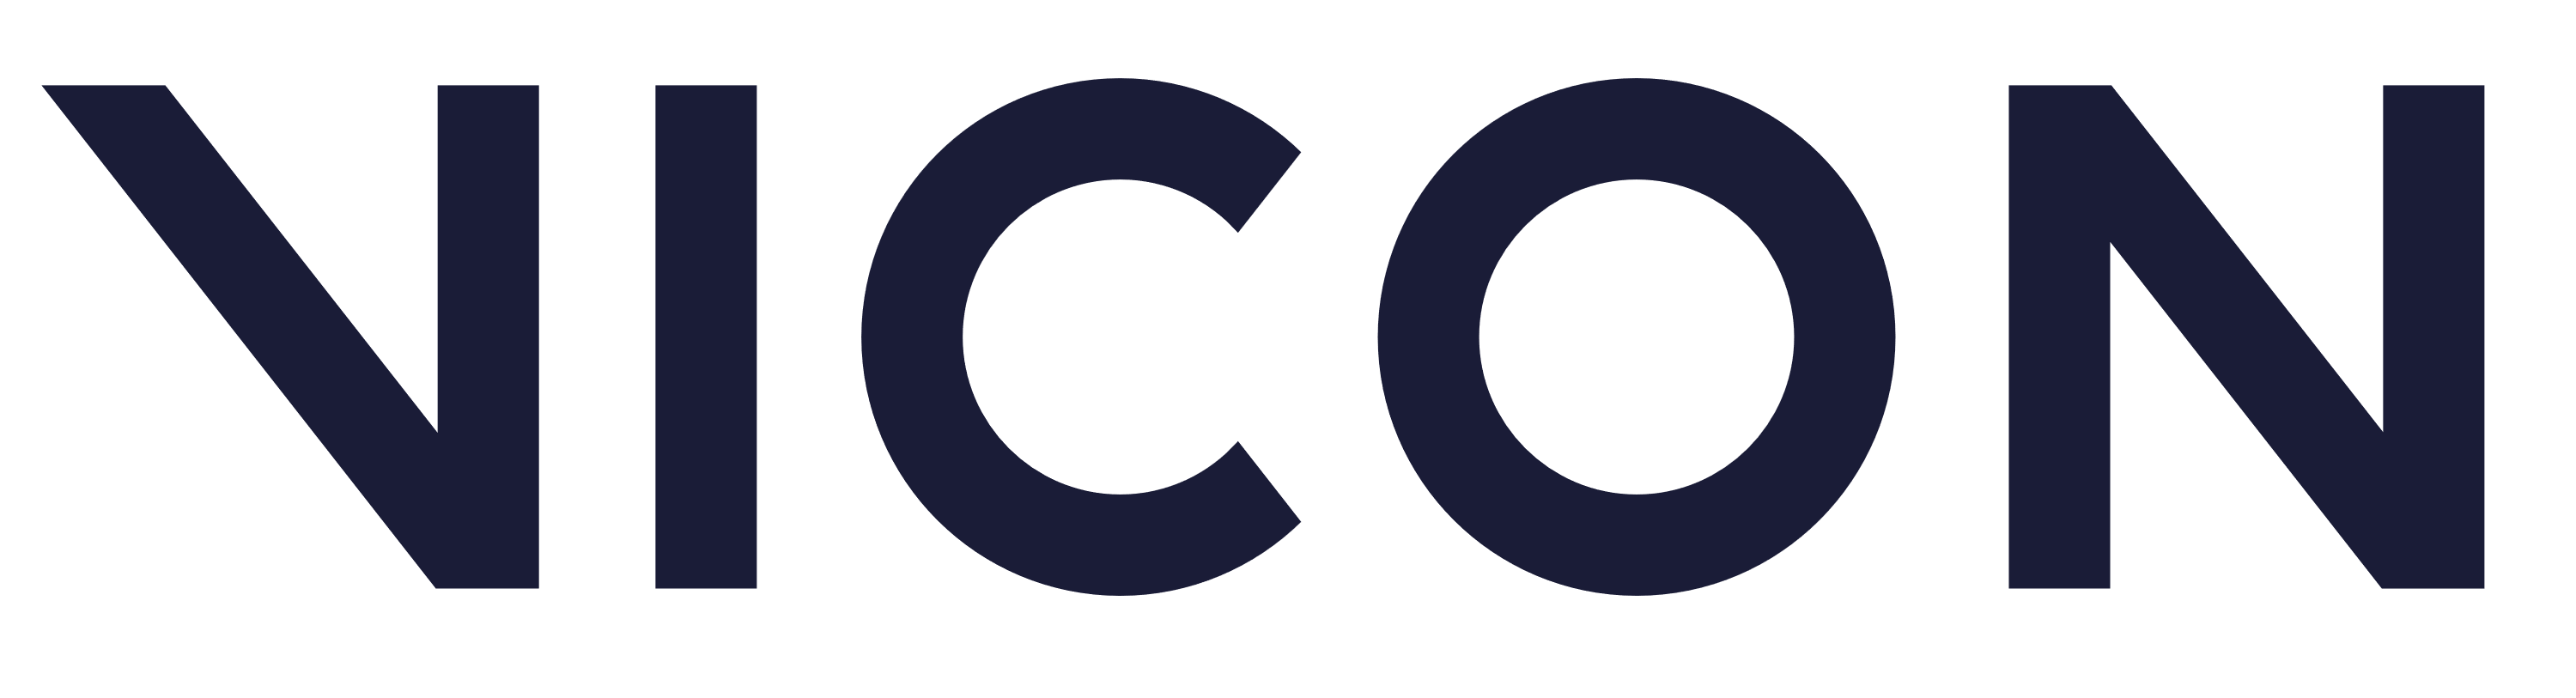 Vicon Logo